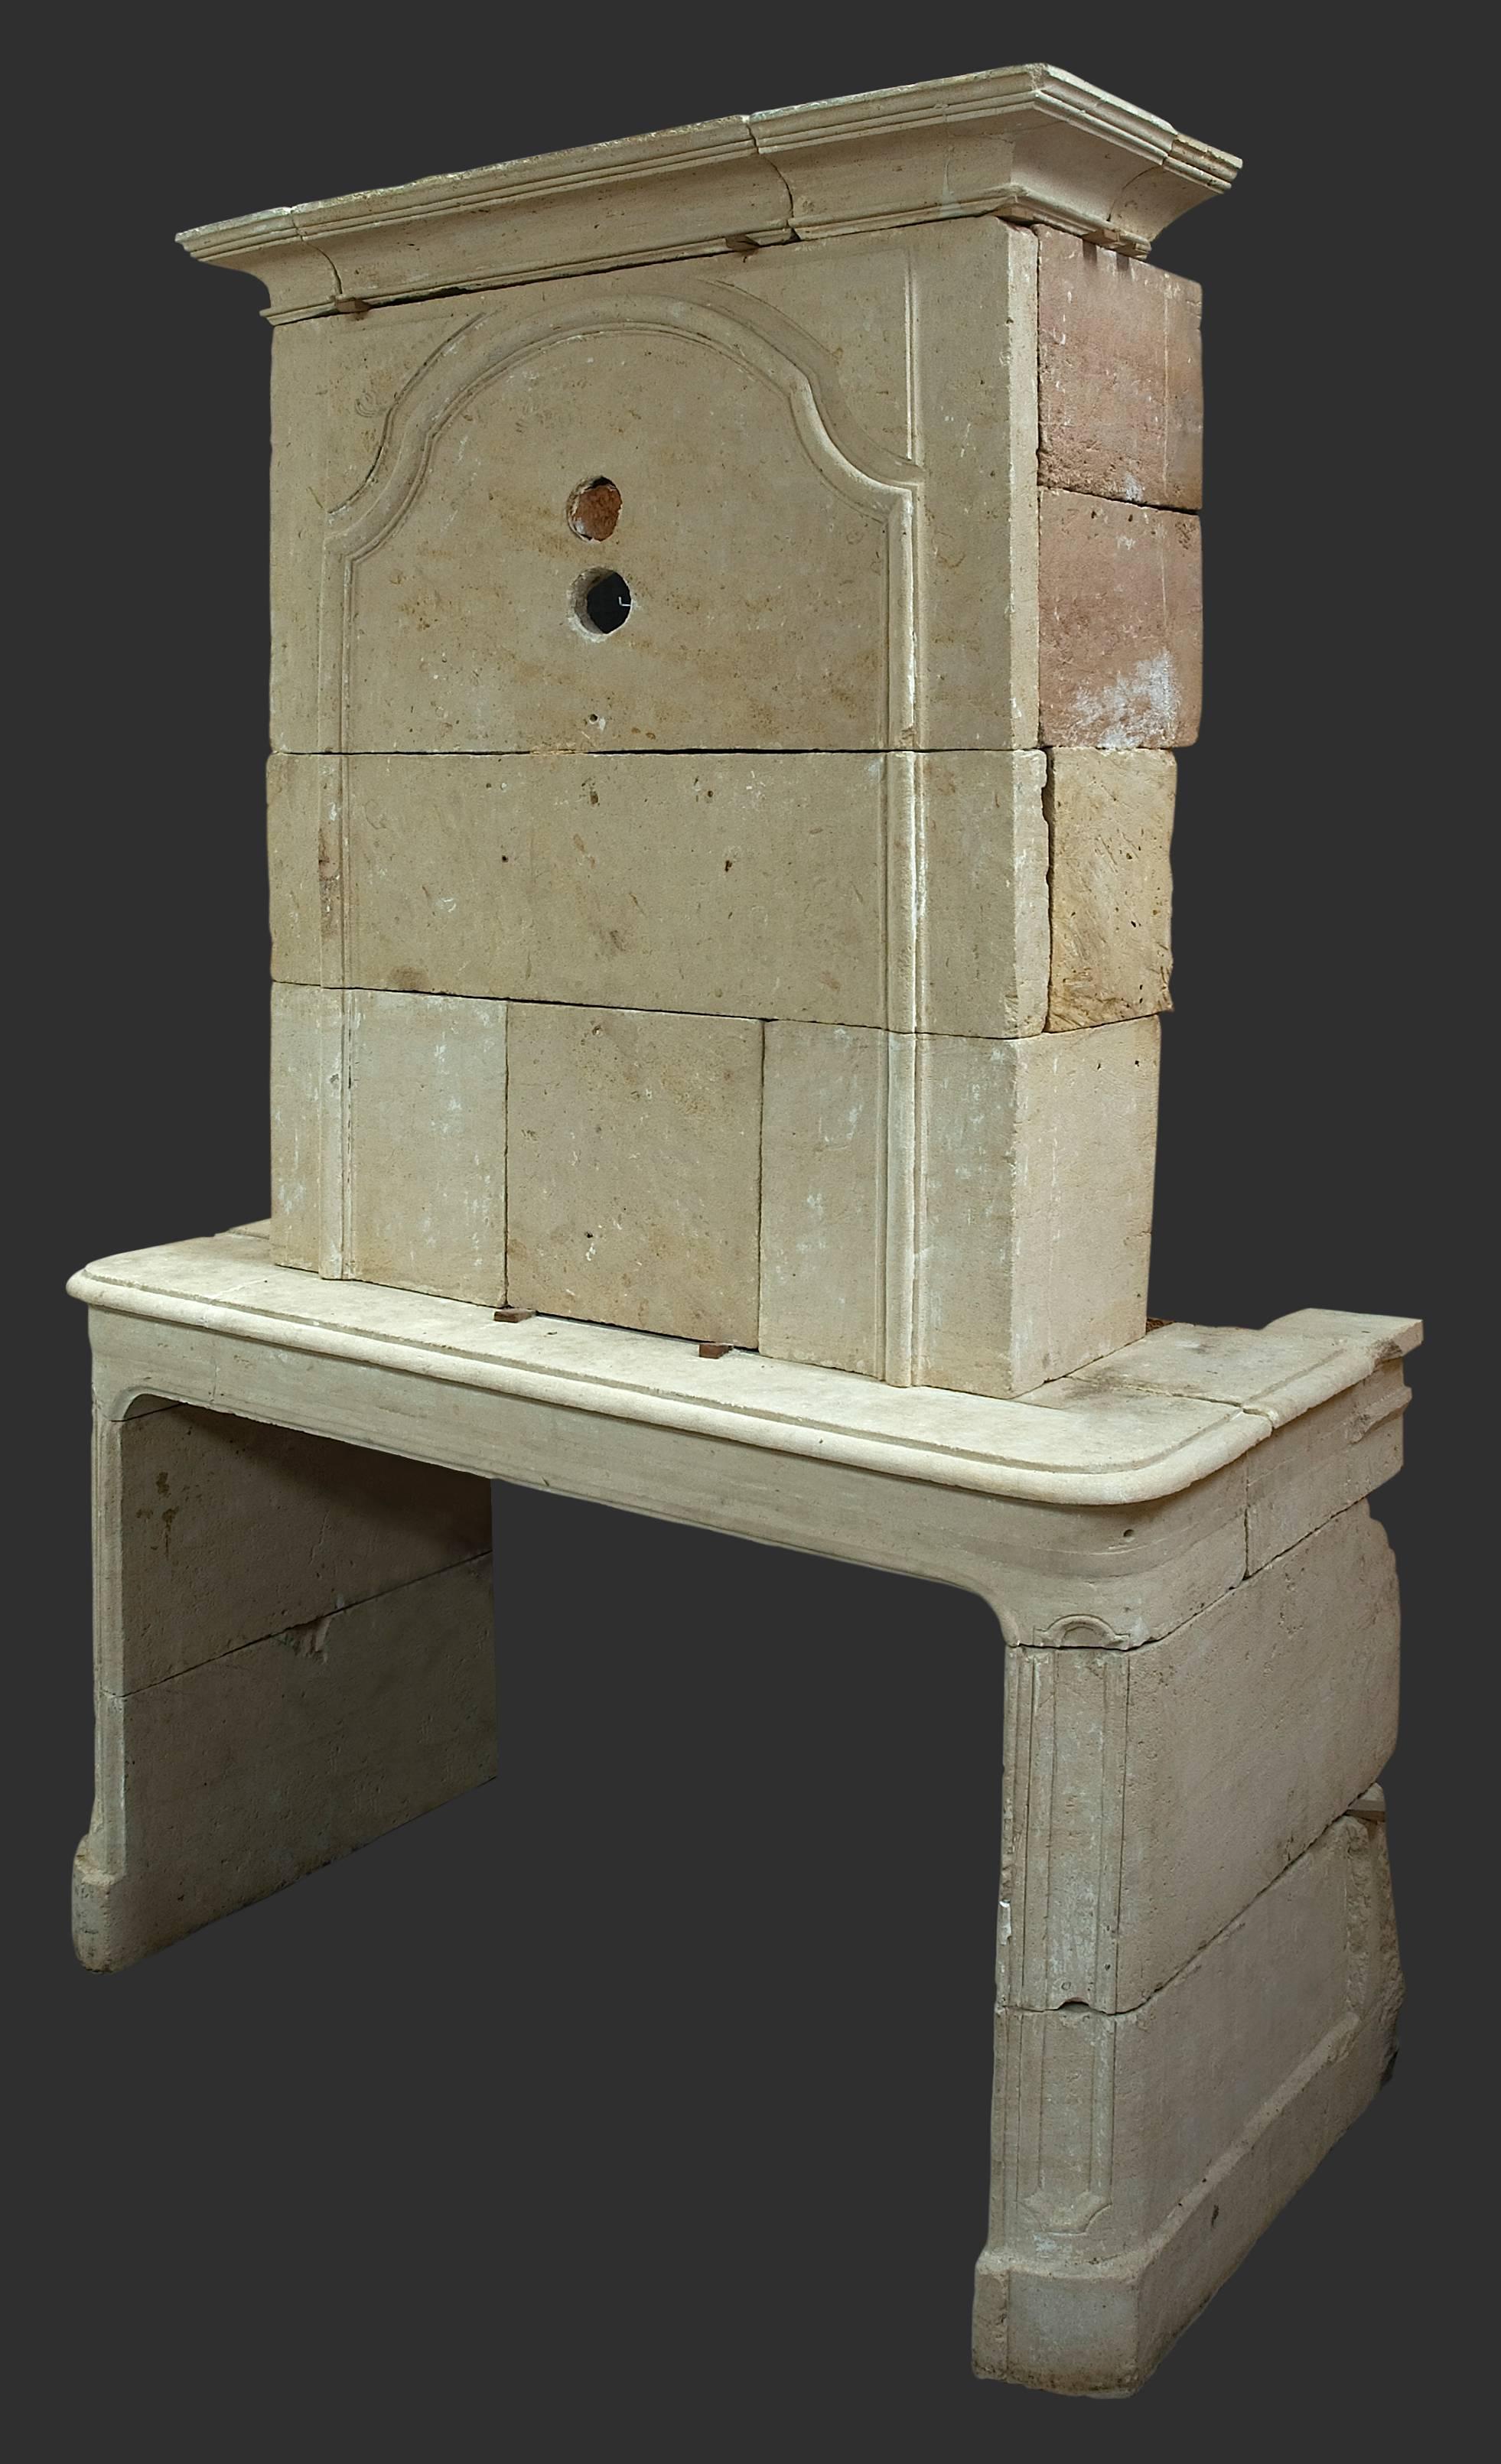 Dieser französische Kamin aus dem 18. Jahrhundert ist aus Sandstein gefertigt und hat sein originales Trumeau oder Oberteil. Es ist ein schönes Beispiel für den Stil Ludwigs XIV., der aus der Regierungszeit des berühmten Sonnenkönigs stammt, der